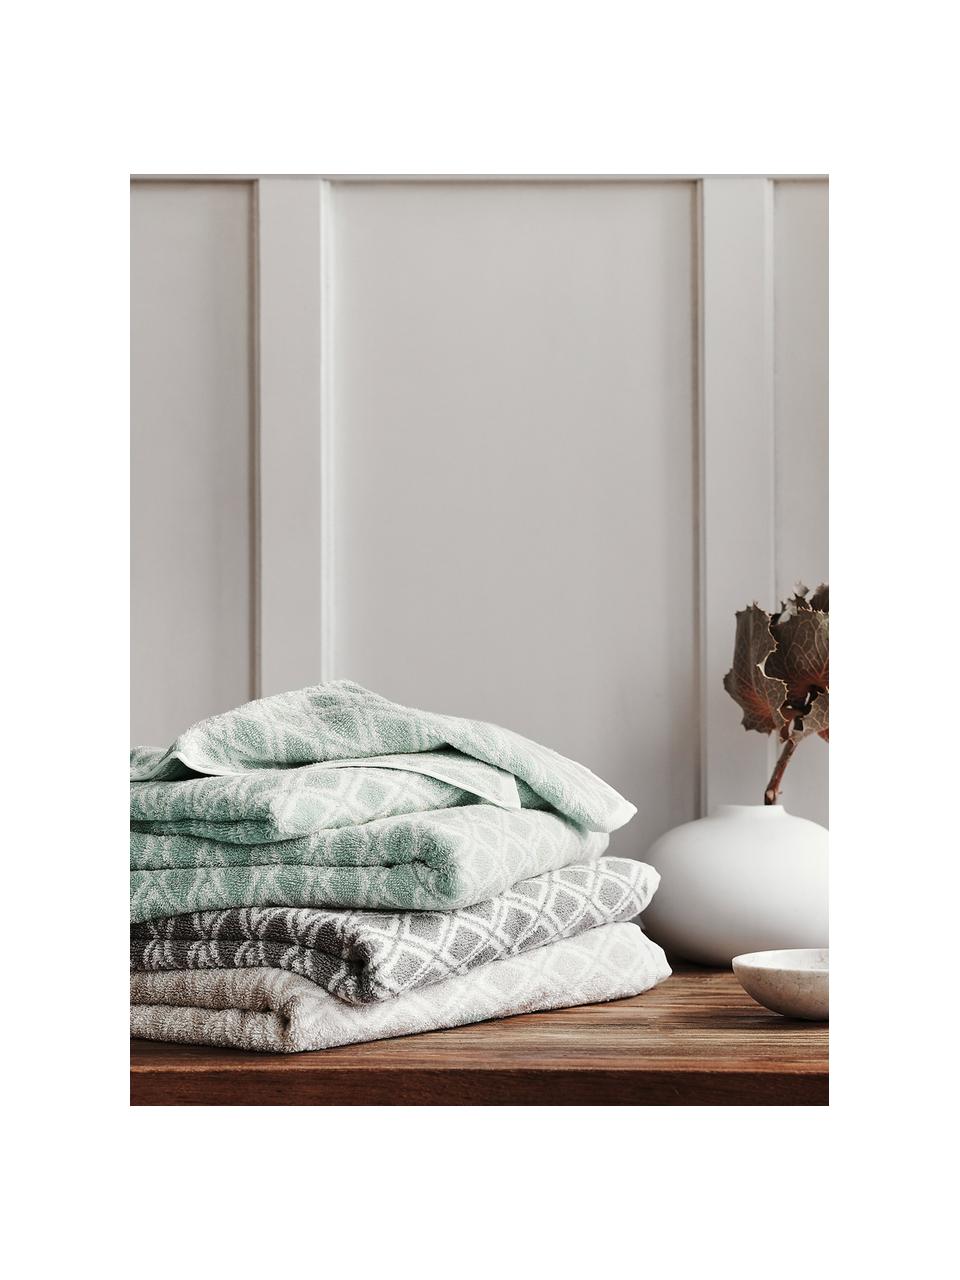 Set 3 asciugamani reversibili Ava, Verde menta, bianco crema, Set in varie misure